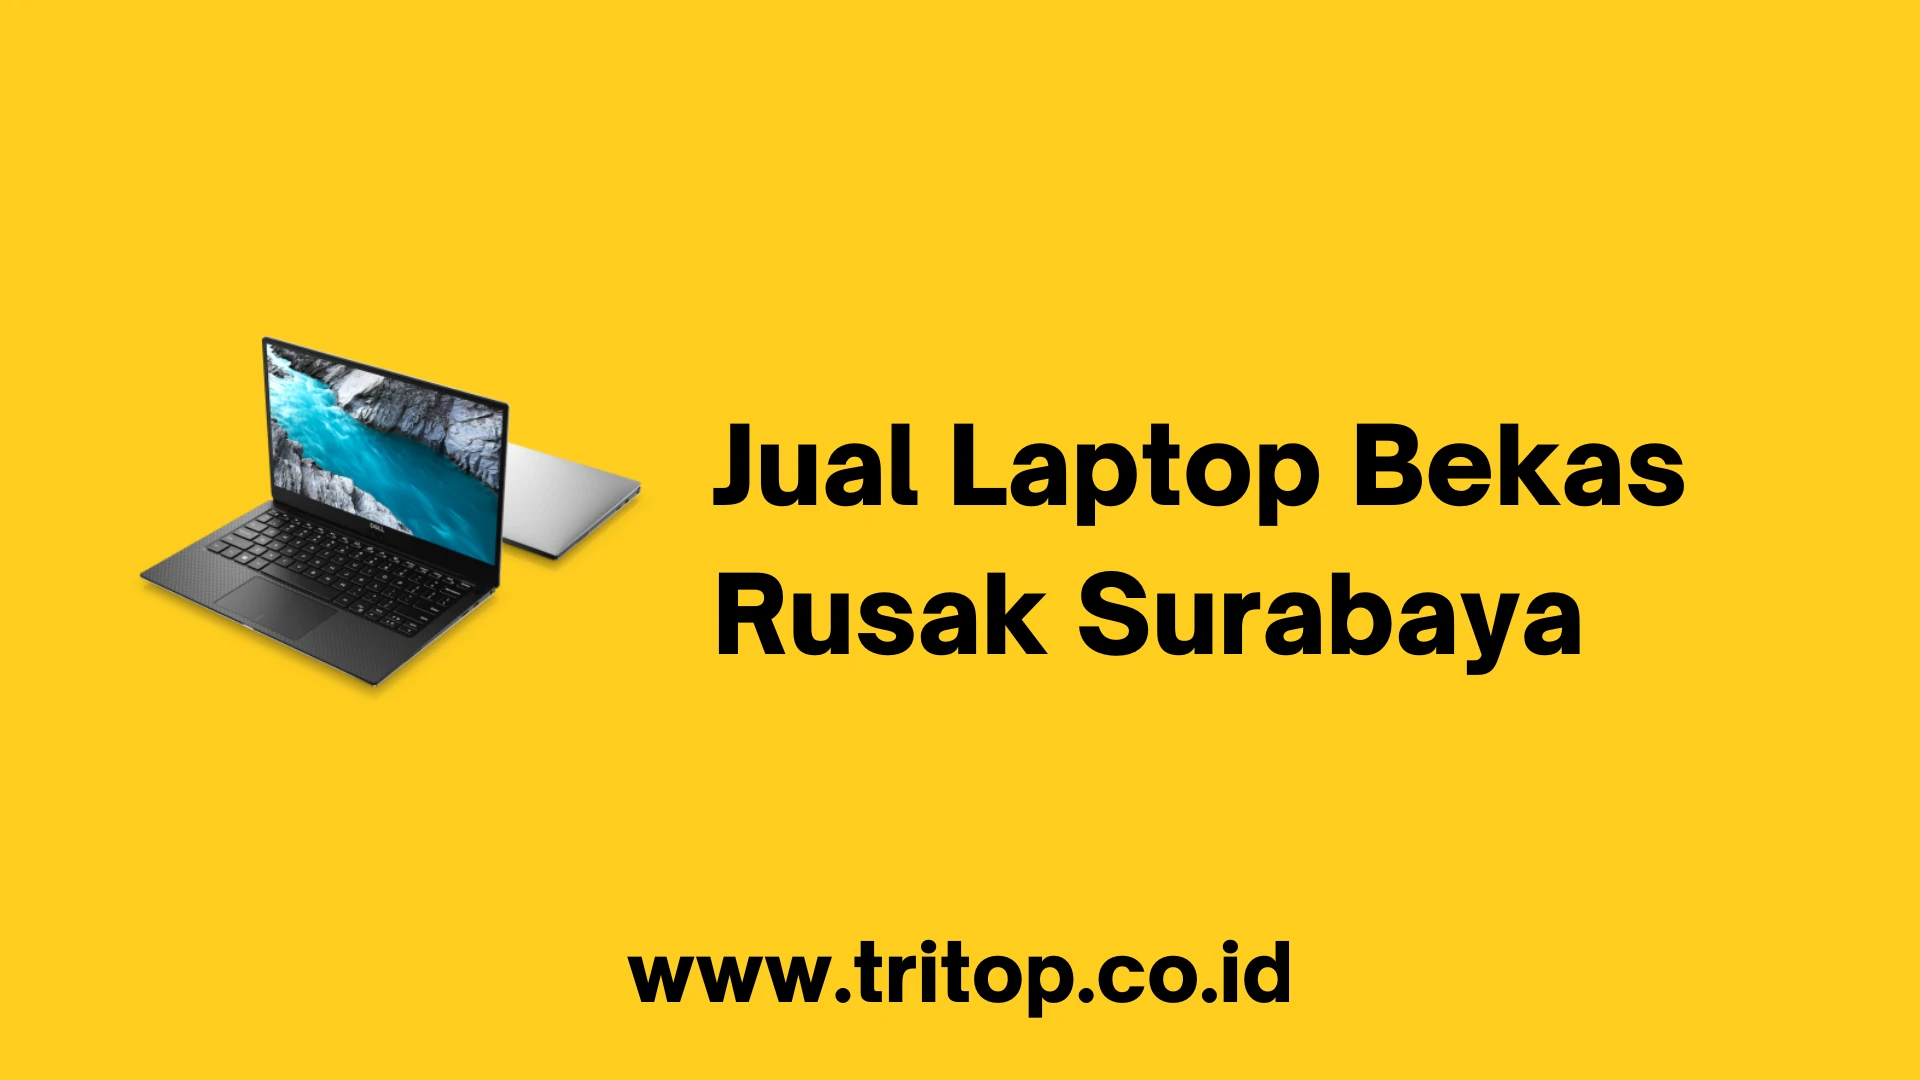 Jual Laptop Bekas Rusak Surabaya